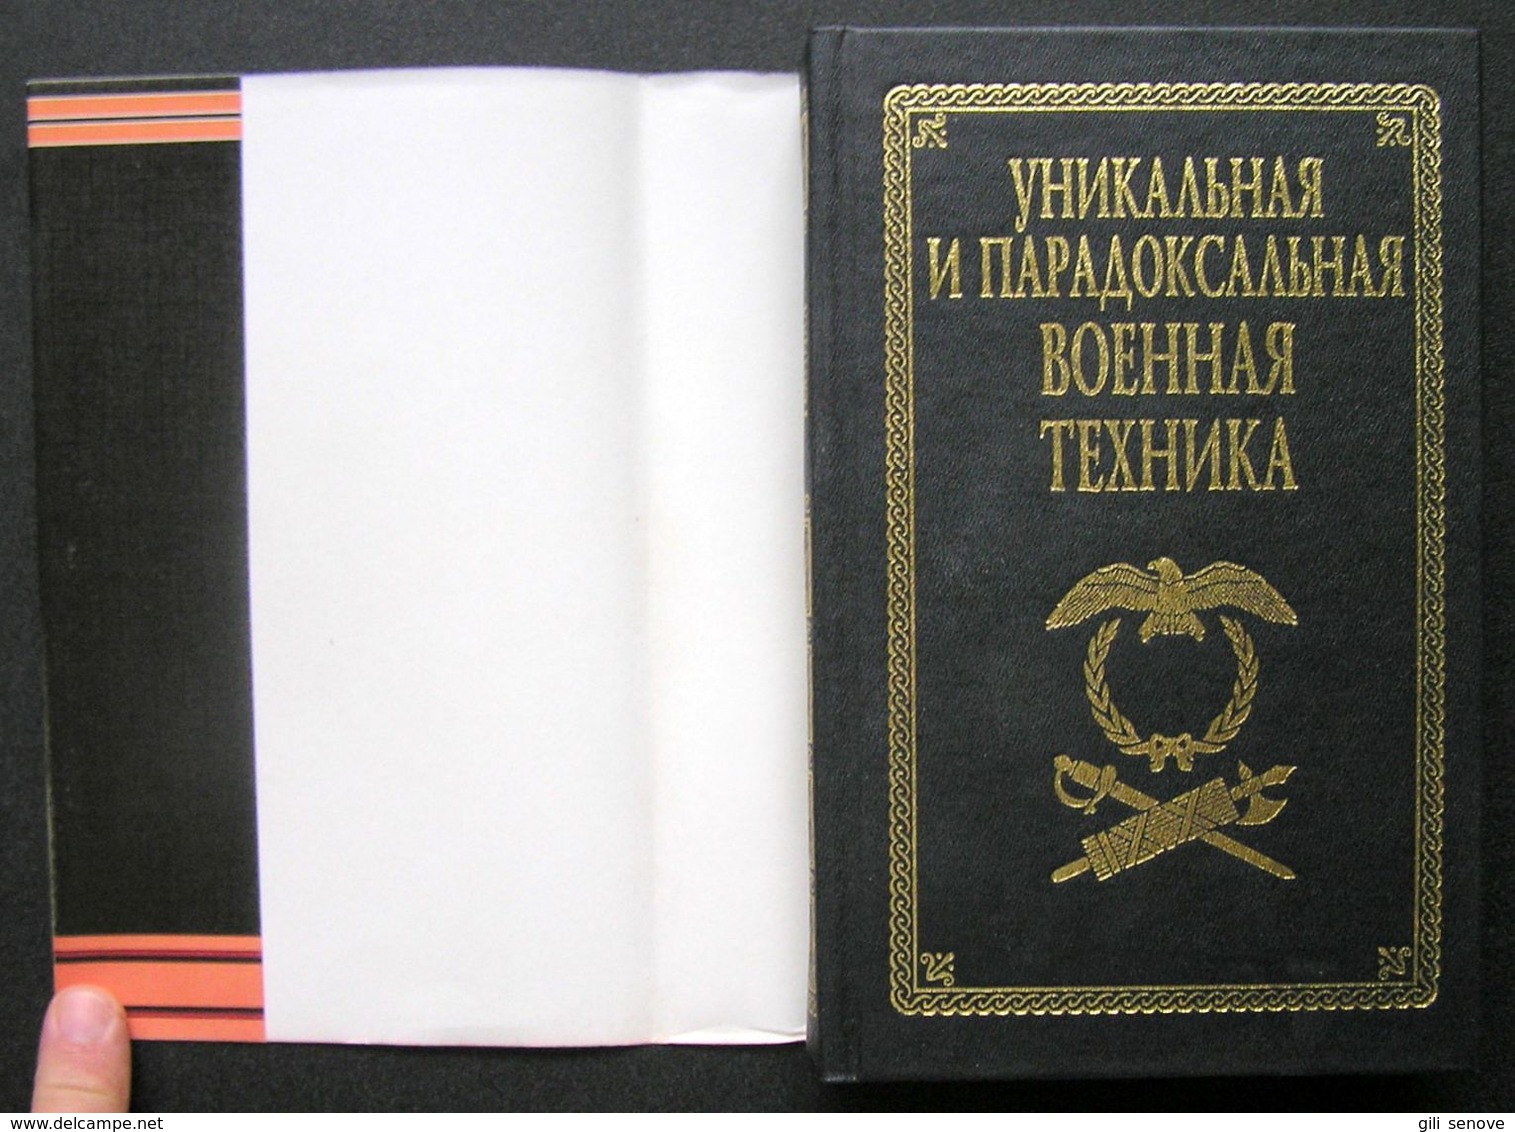 Russian Book / Уникальная и парадоксальная военная техника 1999 - Idiomas Eslavos